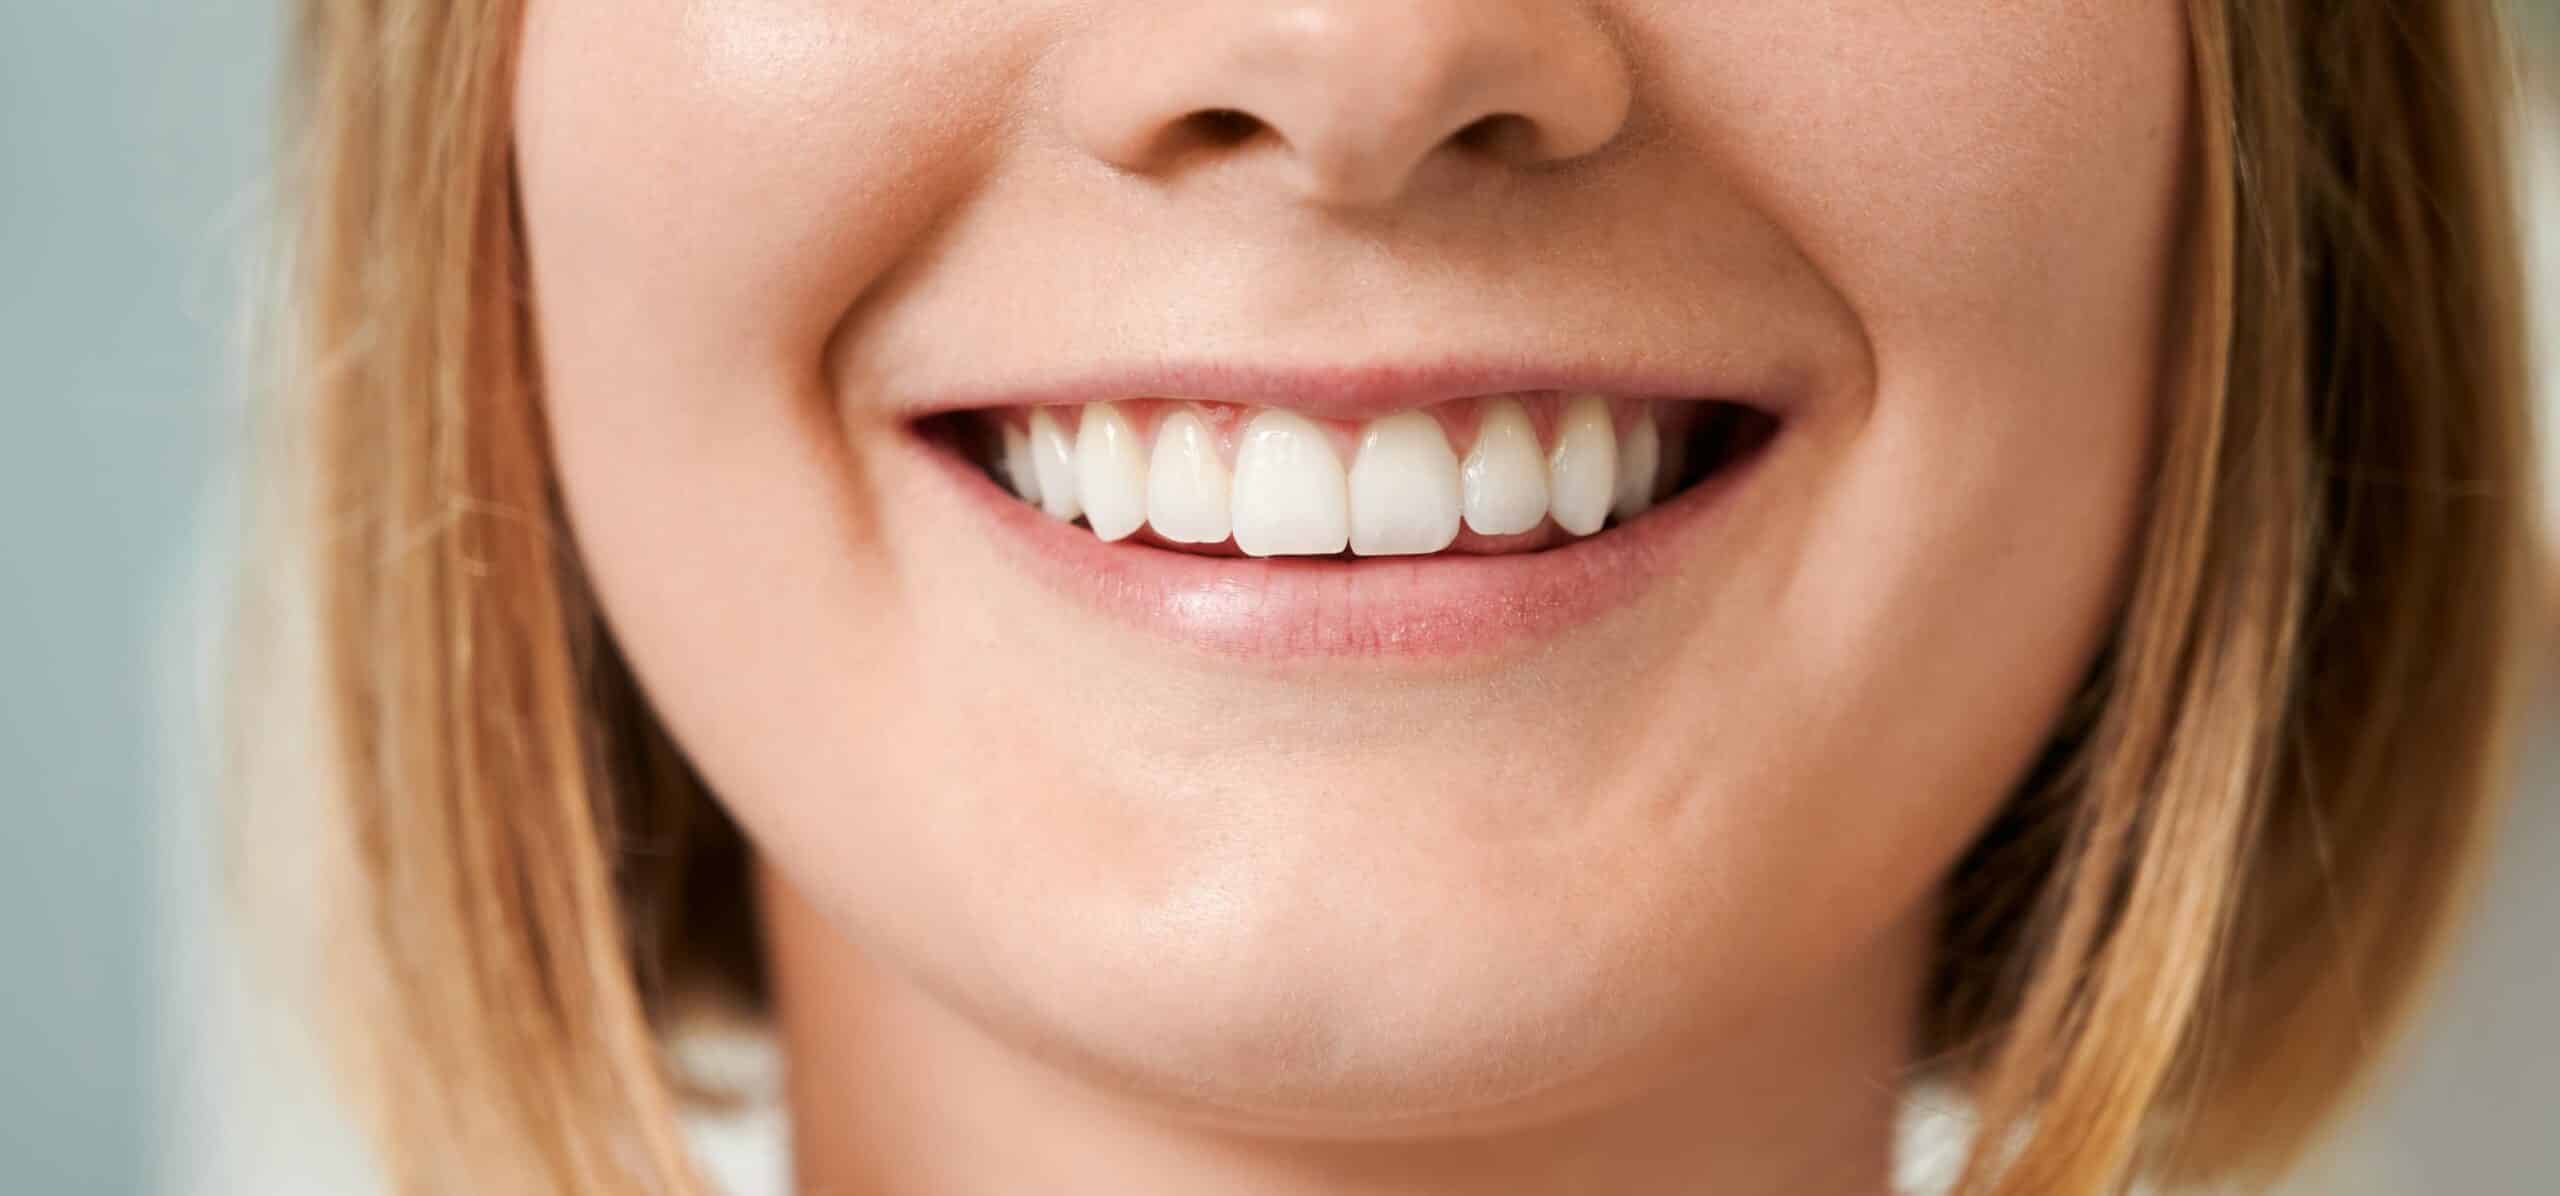 J’ai les dents jaunes : que faire ?| Dr Temstet| Paris